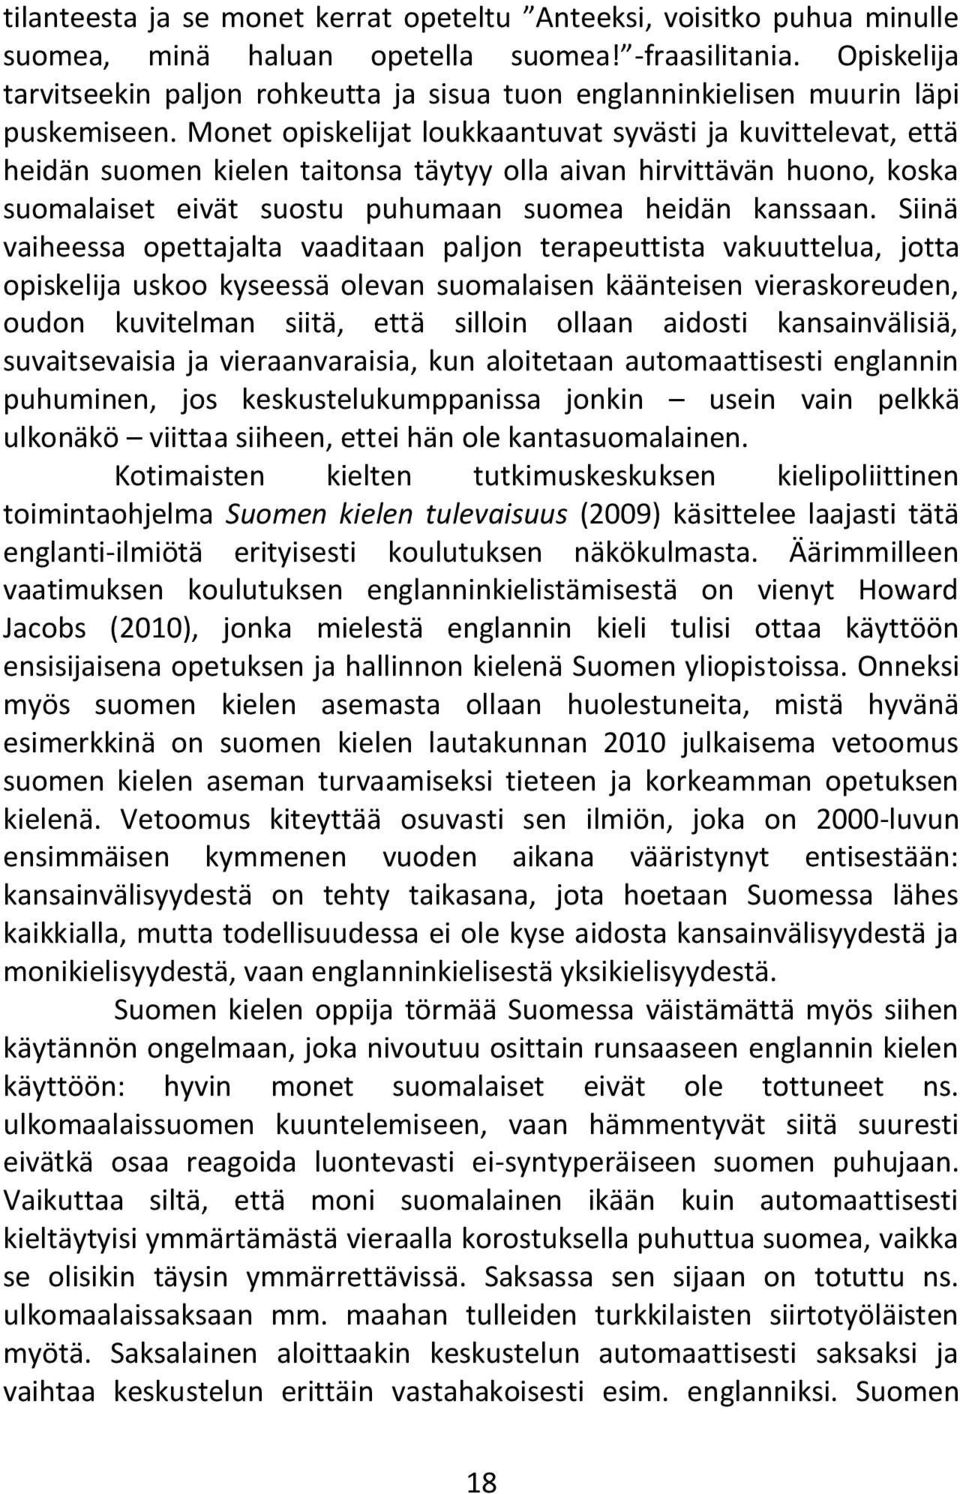 Monet opiskelijat loukkaantuvat syvästi ja kuvittelevat, että heidän suomen kielen taitonsa täytyy olla aivan hirvittävän huono, koska suomalaiset eivät suostu puhumaan suomea heidän kanssaan.